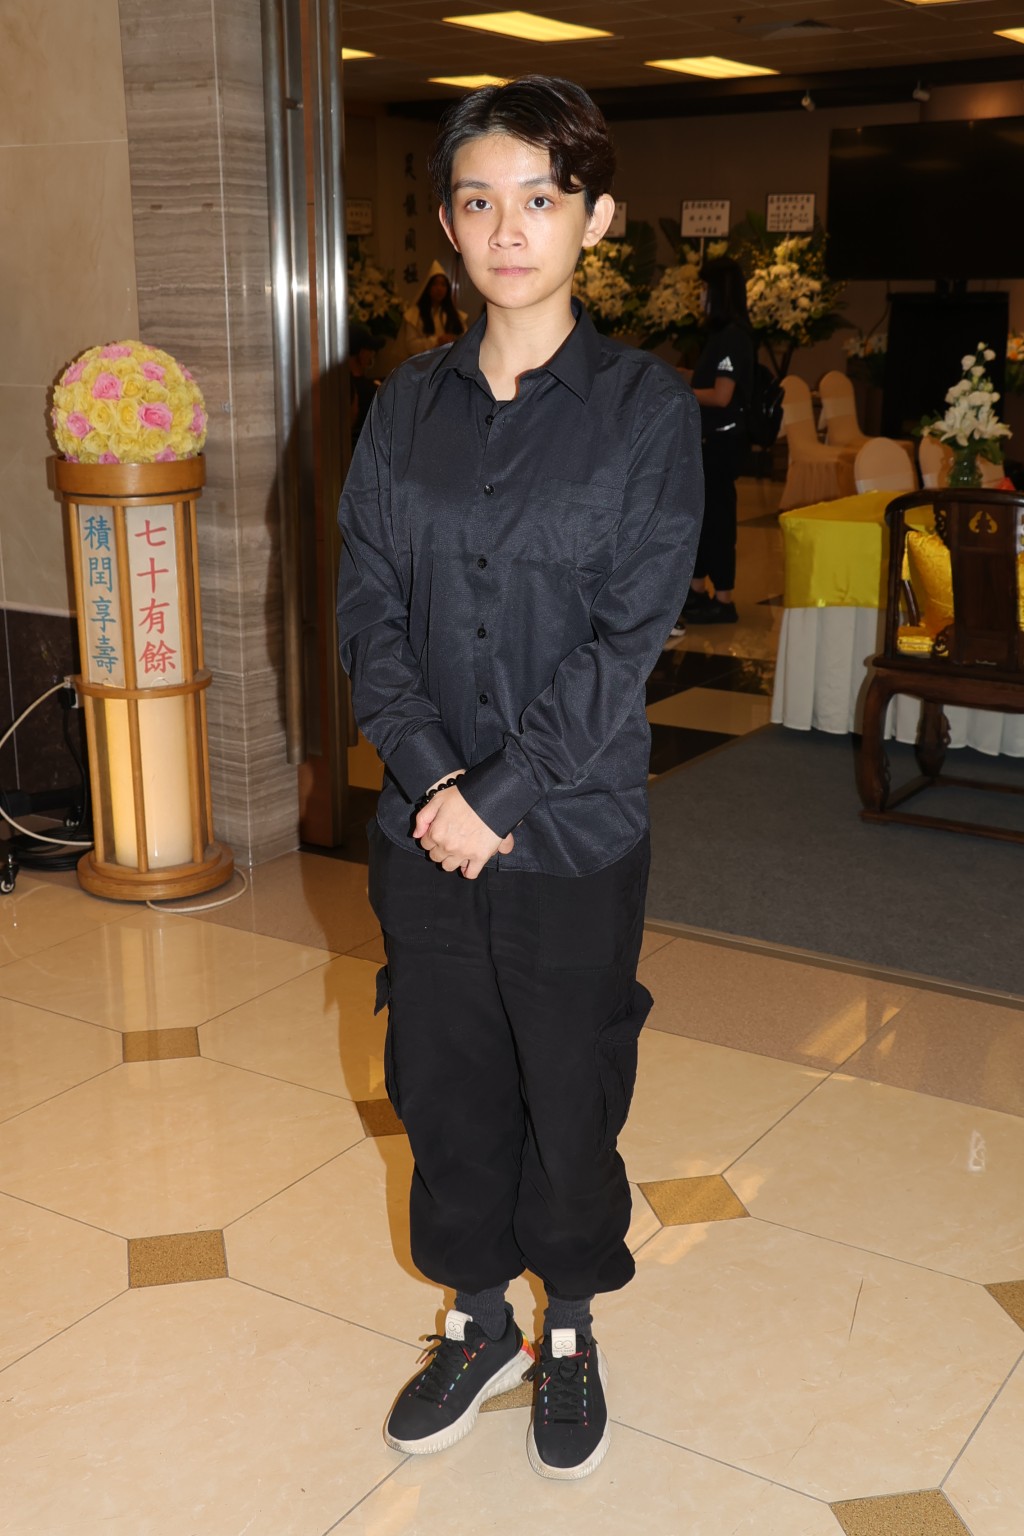 孟希璘是TVB藝員。